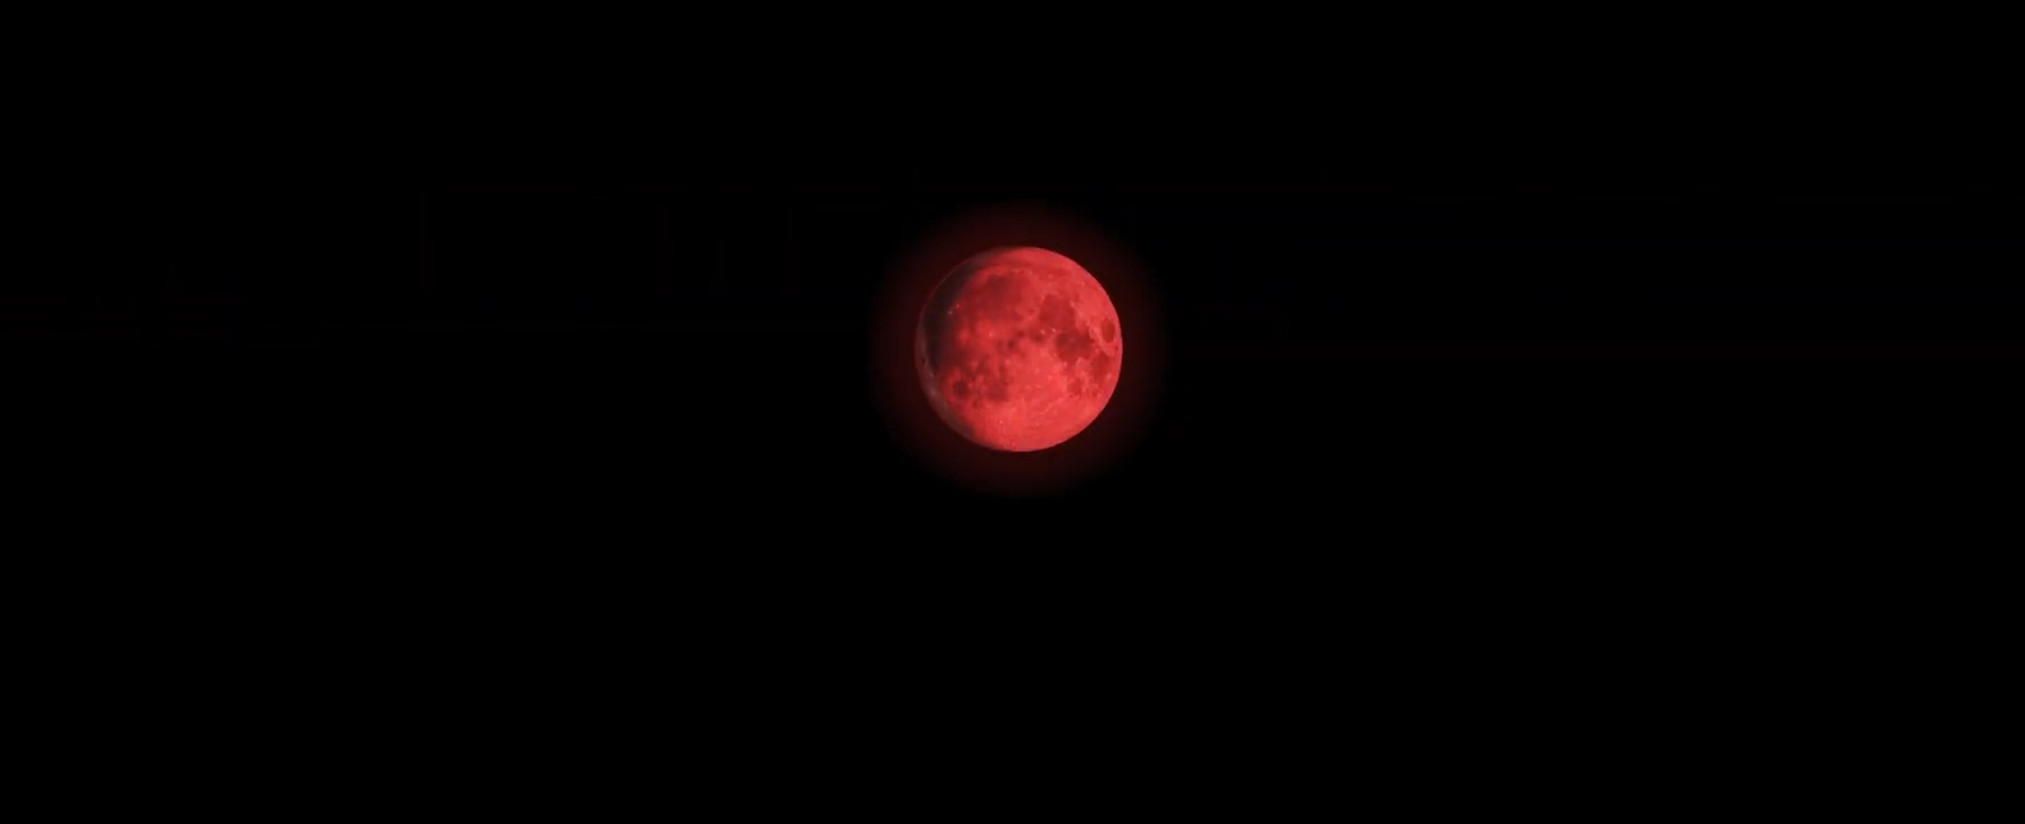 Krvavý mesiac poodhalí vlkolačie tajomstvo vo filme ‚Blood Moon‘